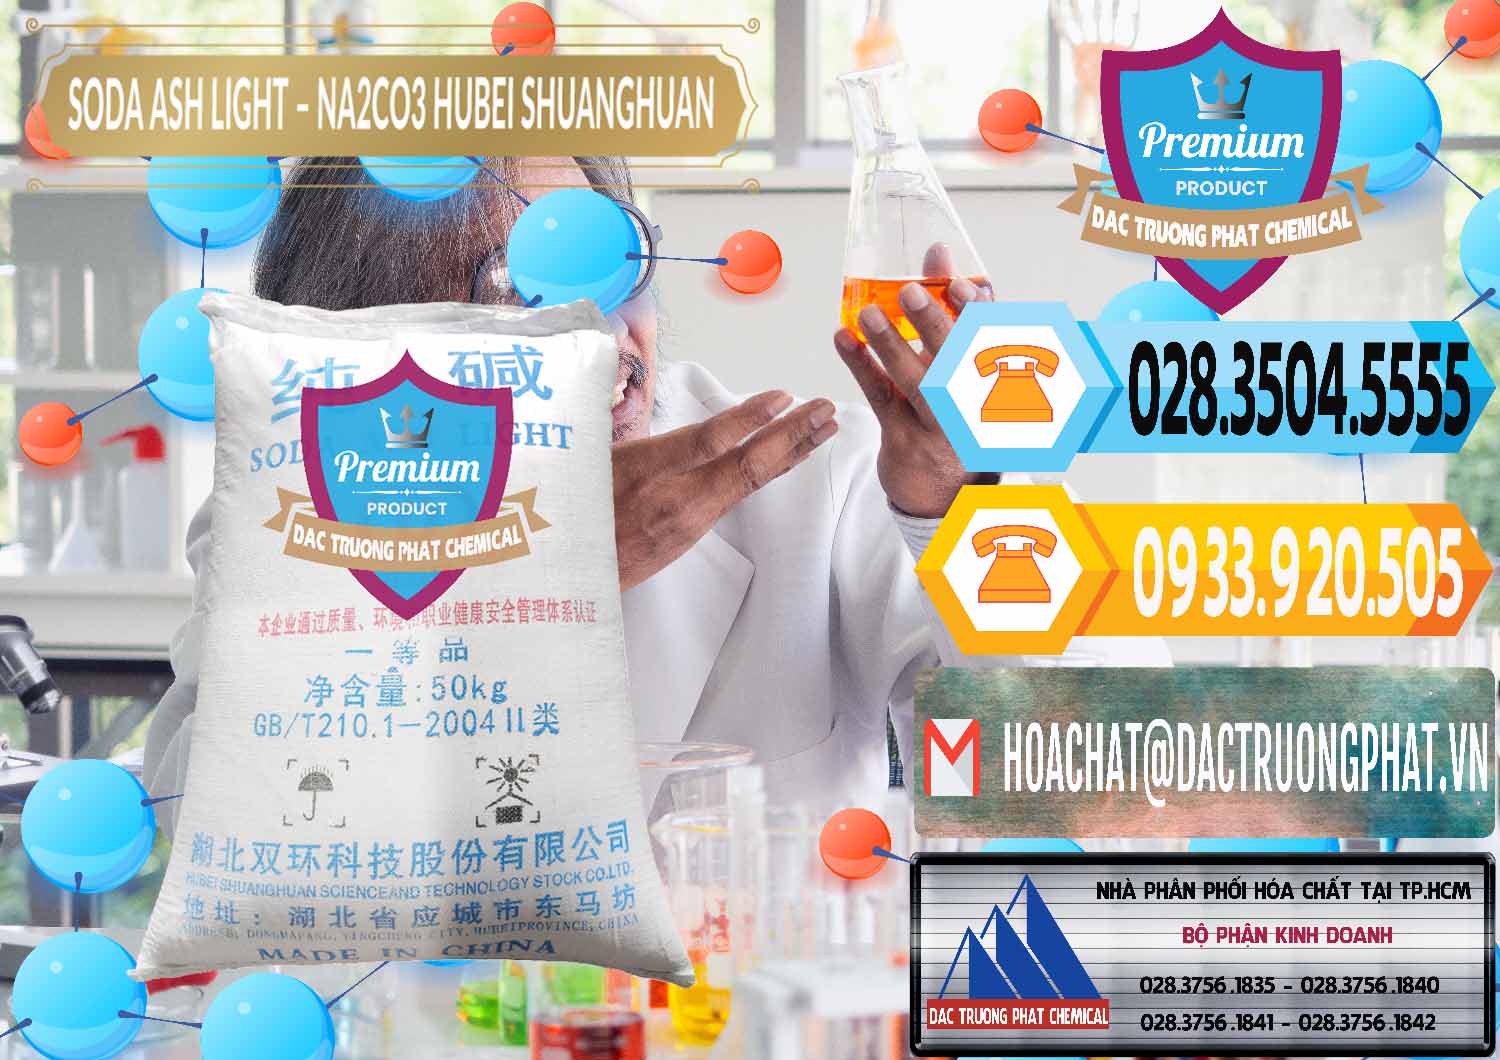 Cty chuyên cung ứng ( bán ) Soda Ash Light - NA2CO3 2 Vòng Tròn Hubei Shuanghuan Trung Quốc China - 0130 - Cty phân phối _ cung cấp hóa chất tại TP.HCM - hoachattayrua.net